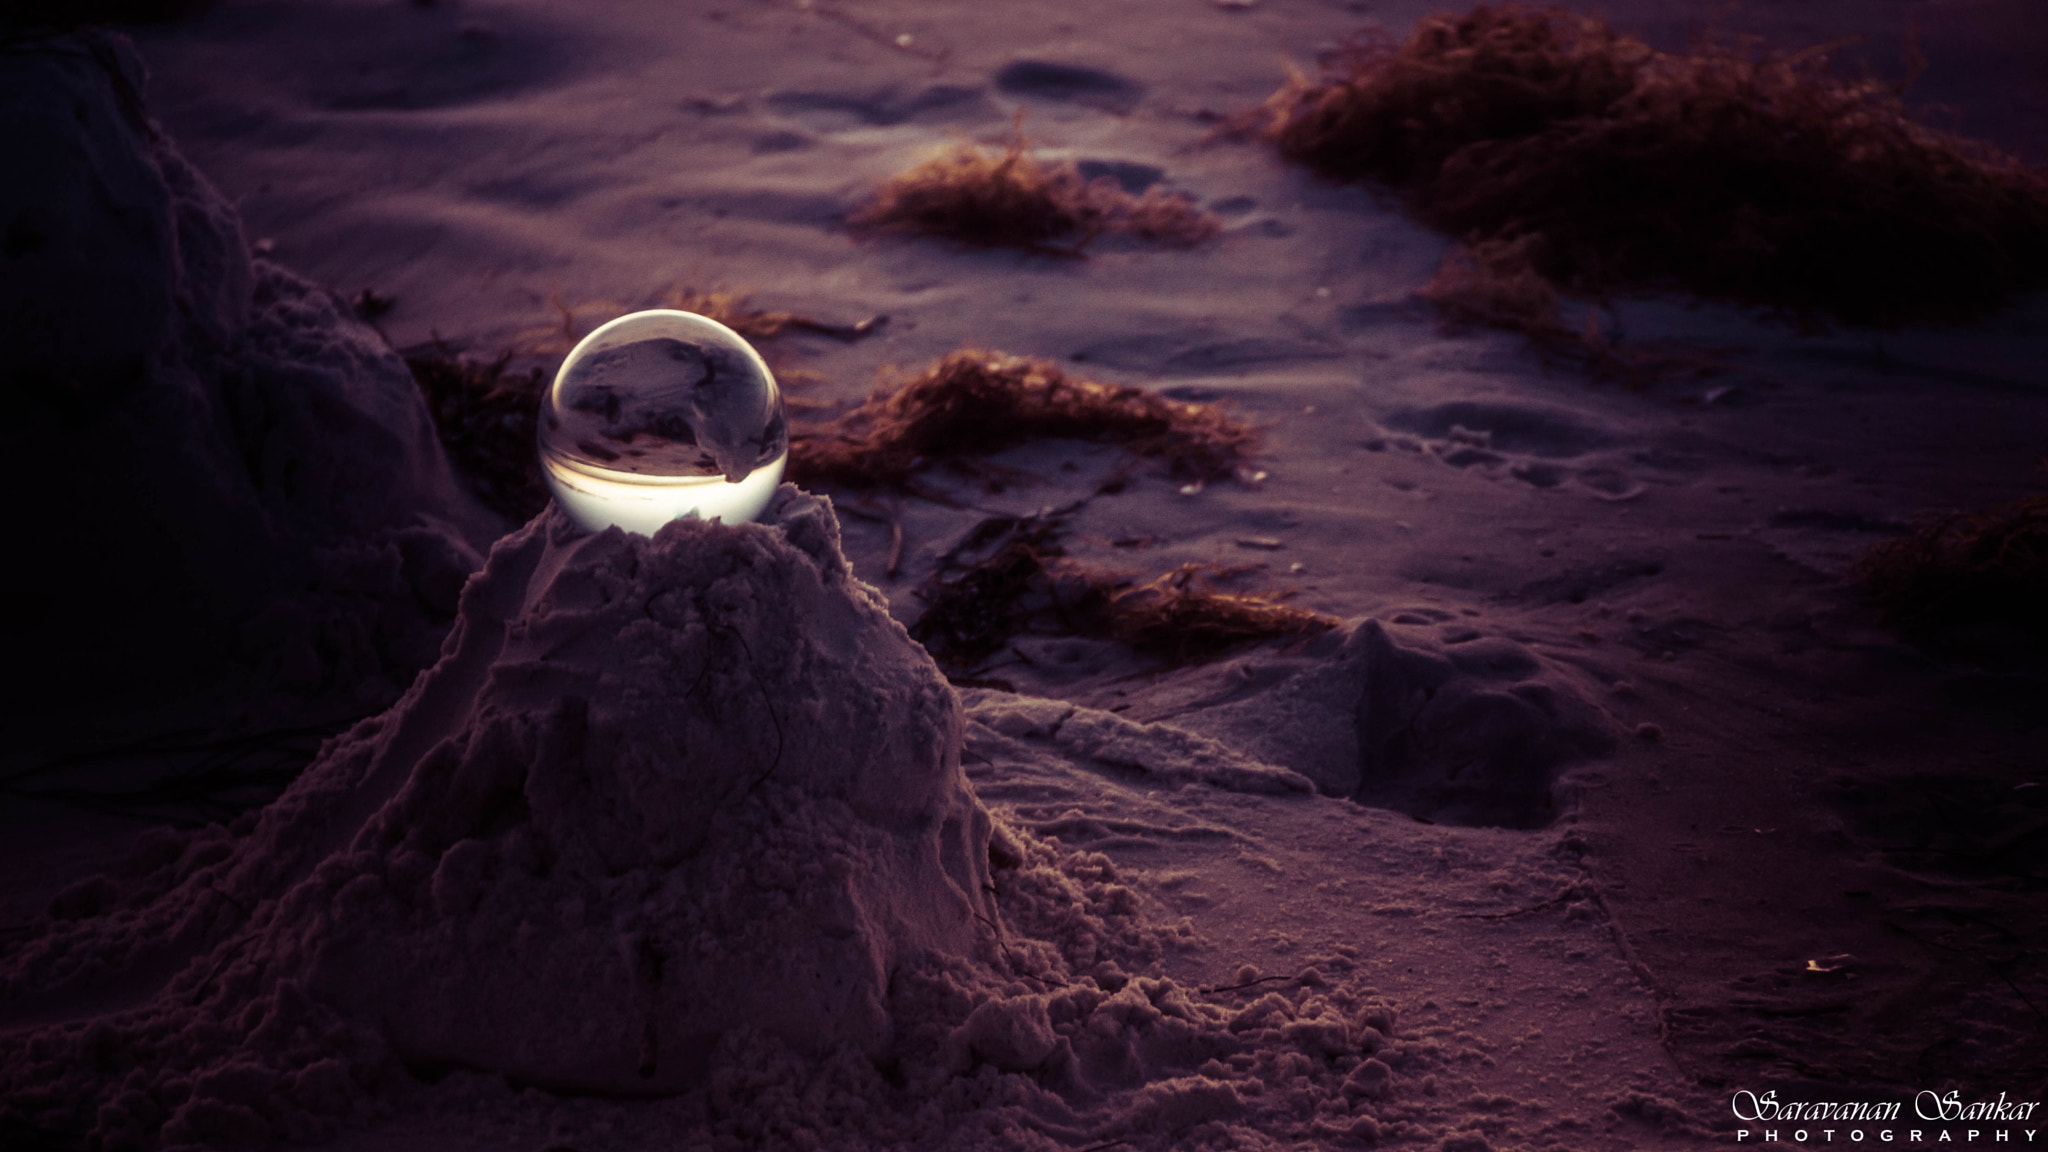 Sony SLT-A65 (SLT-A65V) sample photo. Crystal ball on white sand - dusk photography